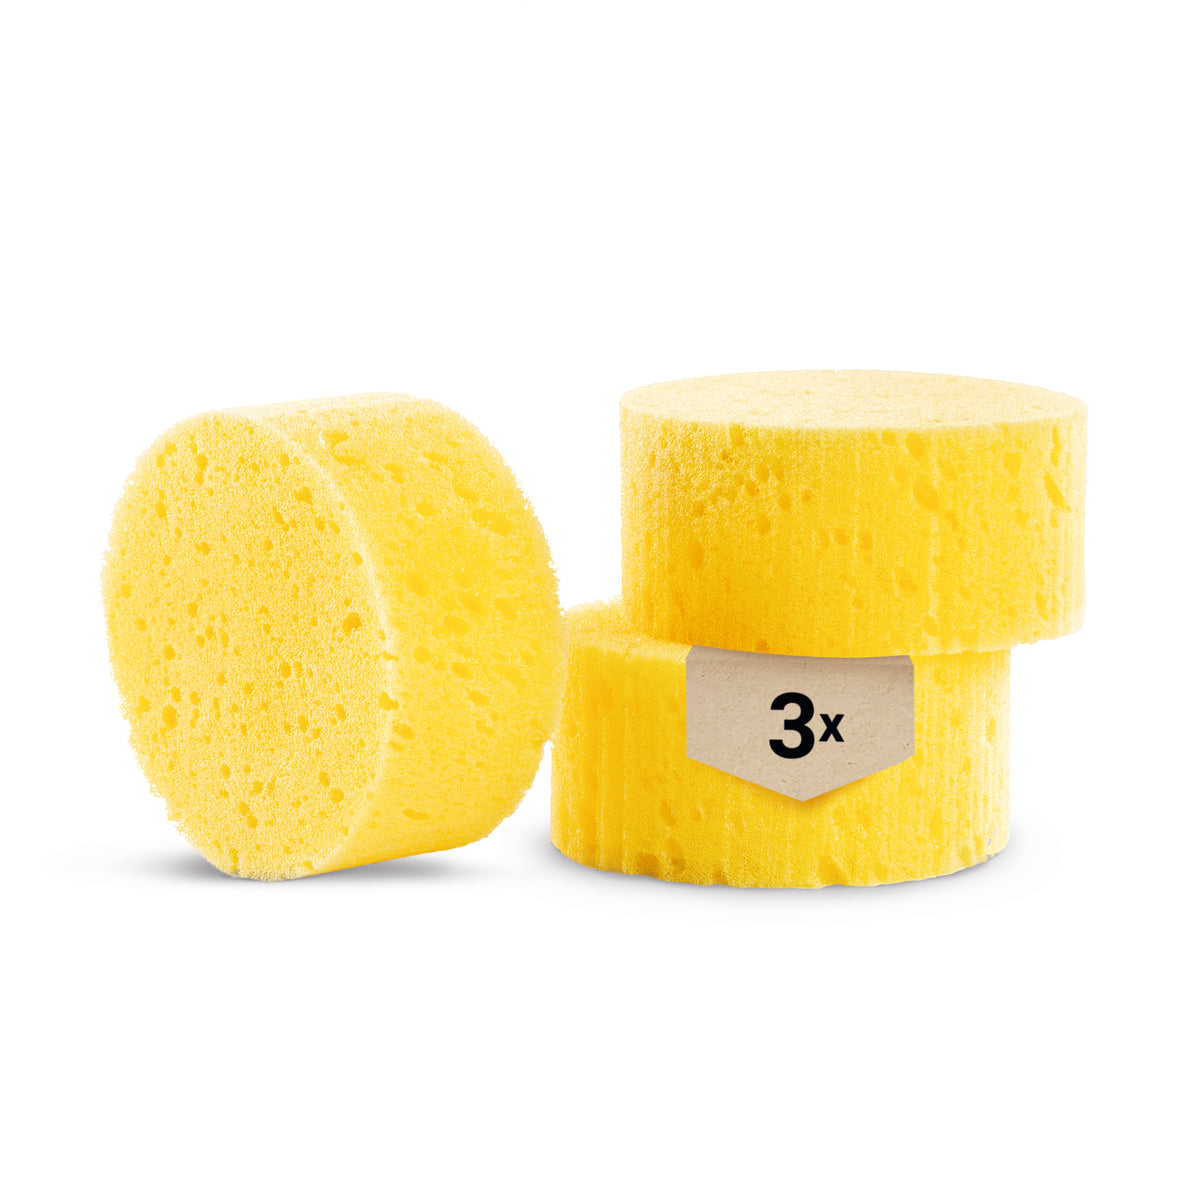 5 Pcs Sponge Scrubber Horse Accessories Large Sponges Cleaning